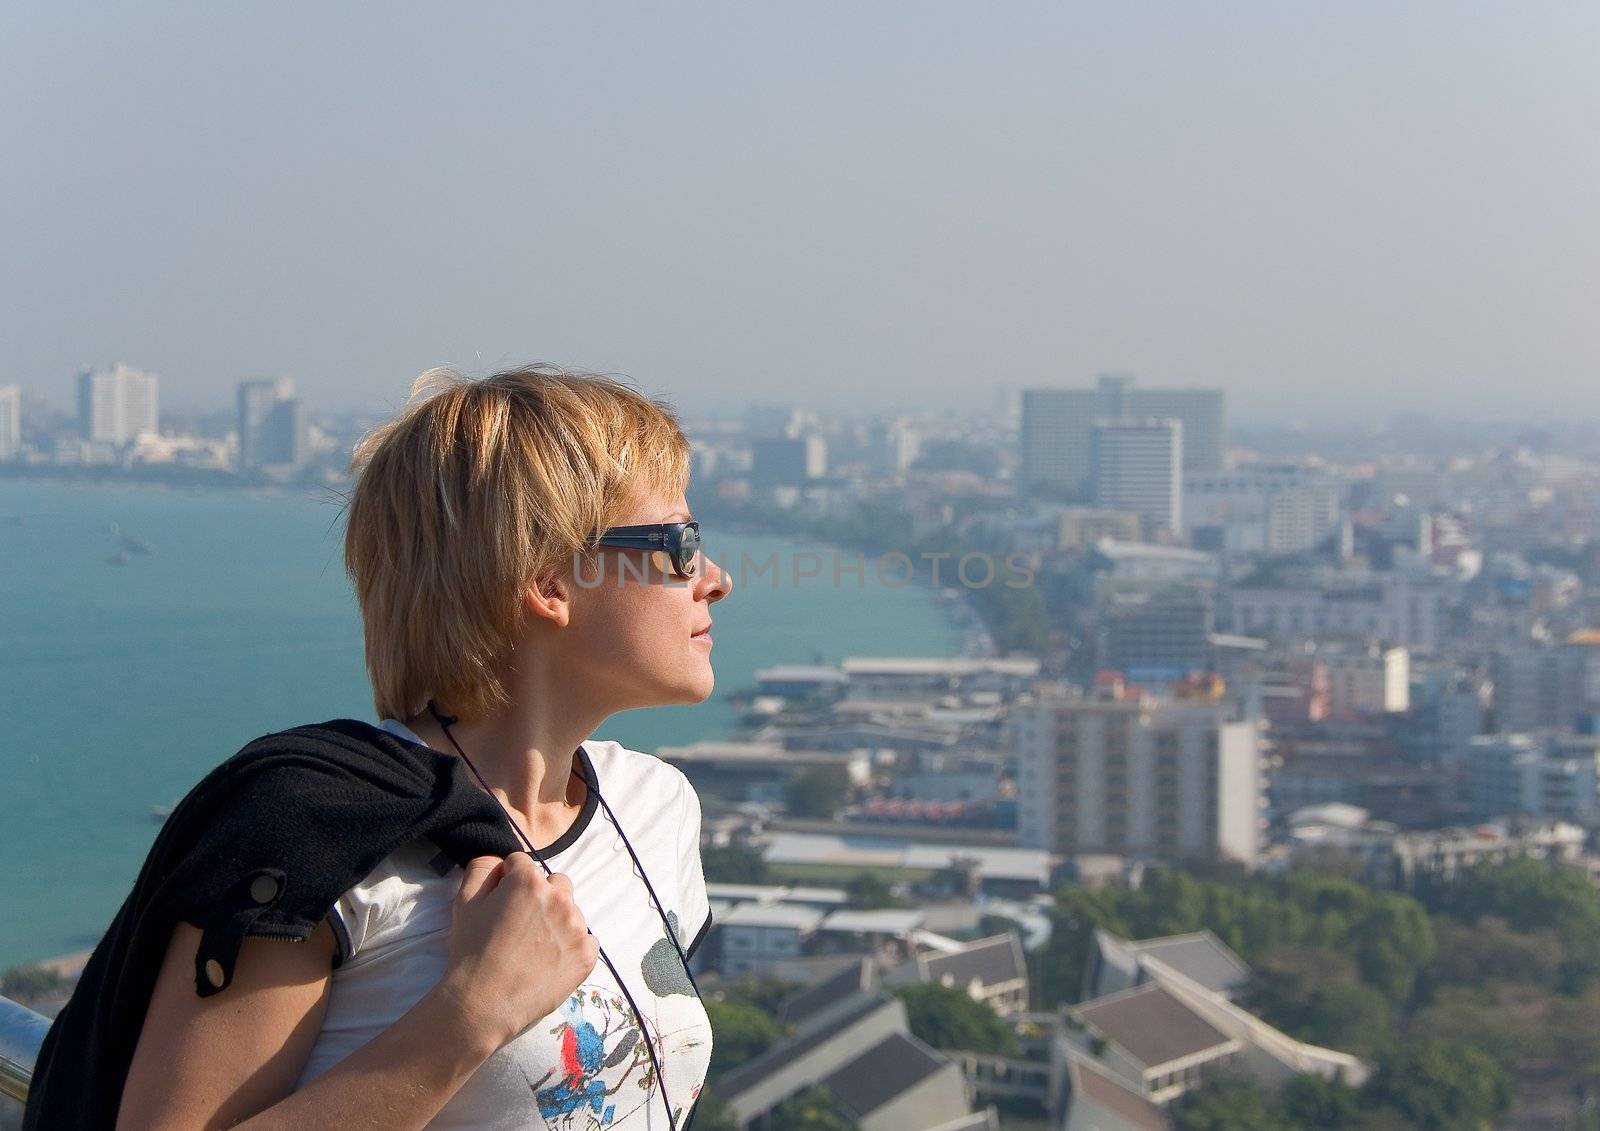 View point in Pattaya, Thailand